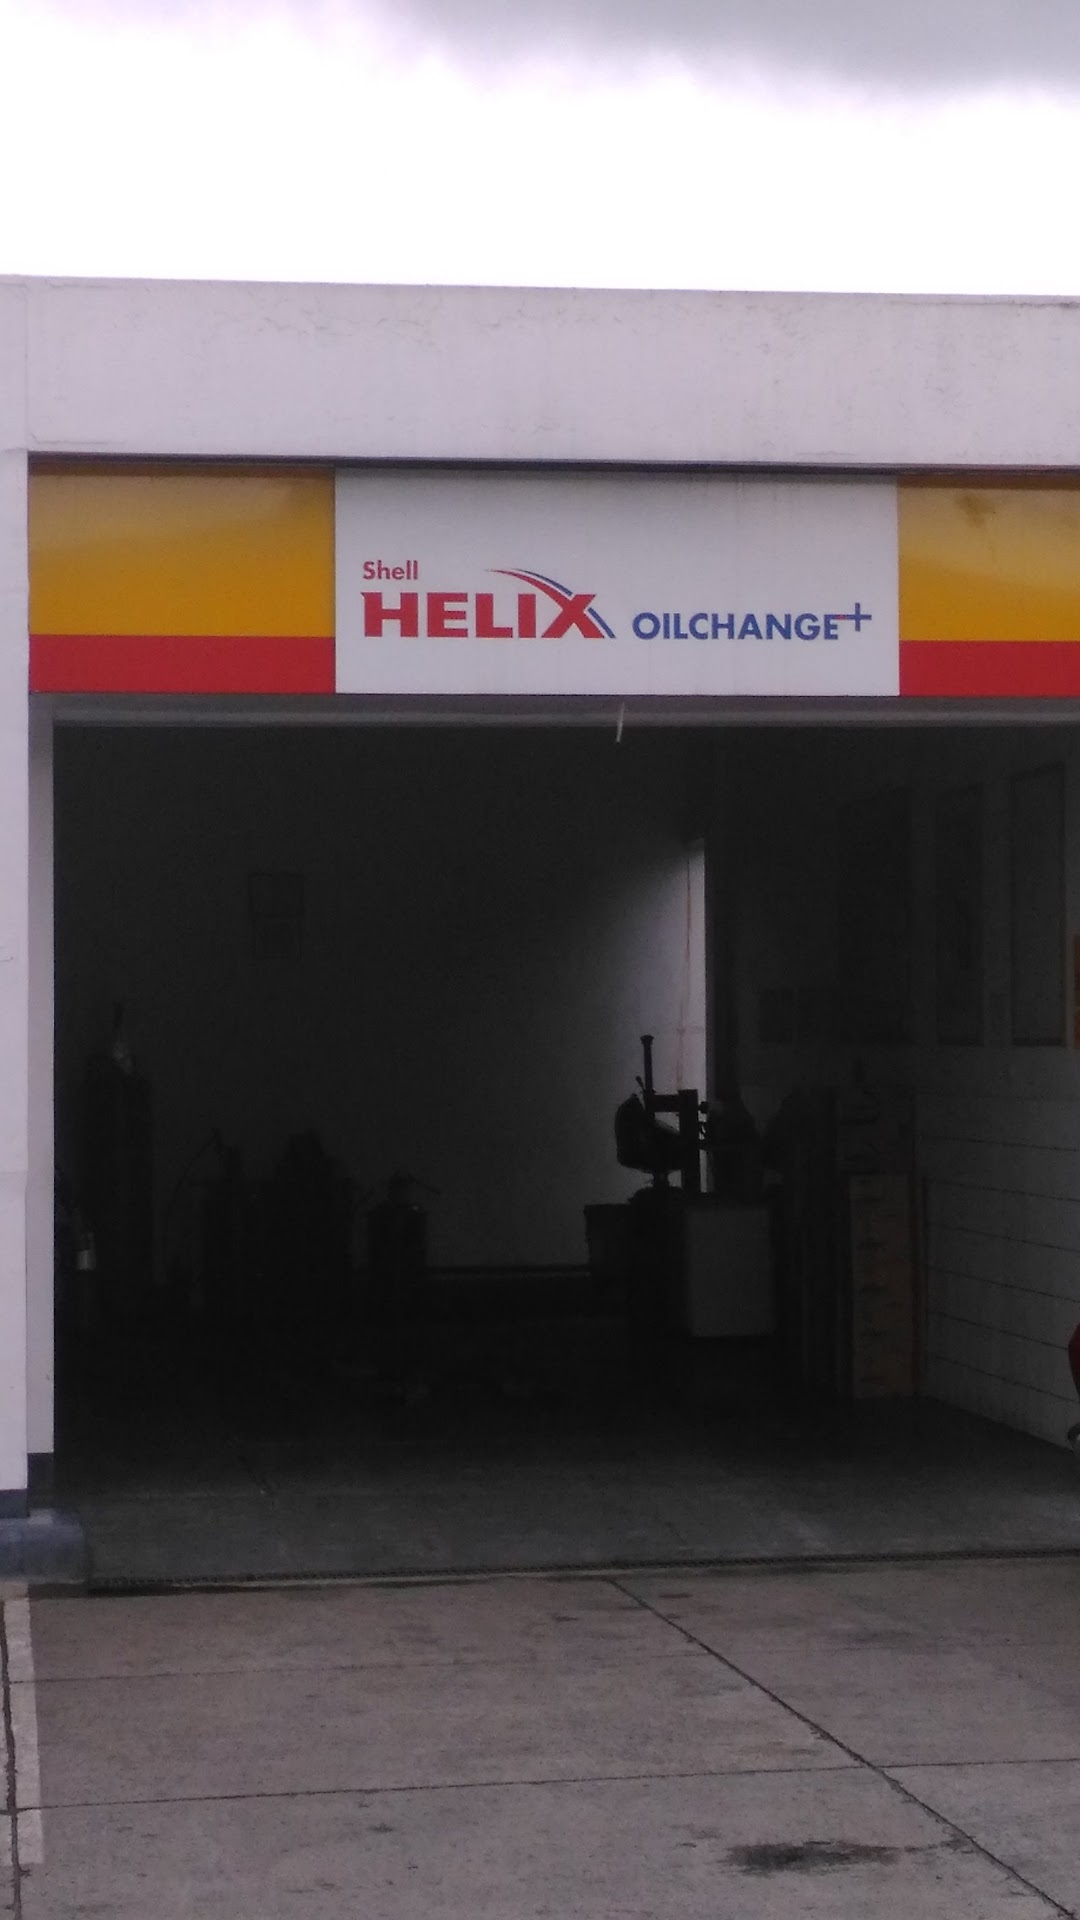 Shell Helix Oilchange